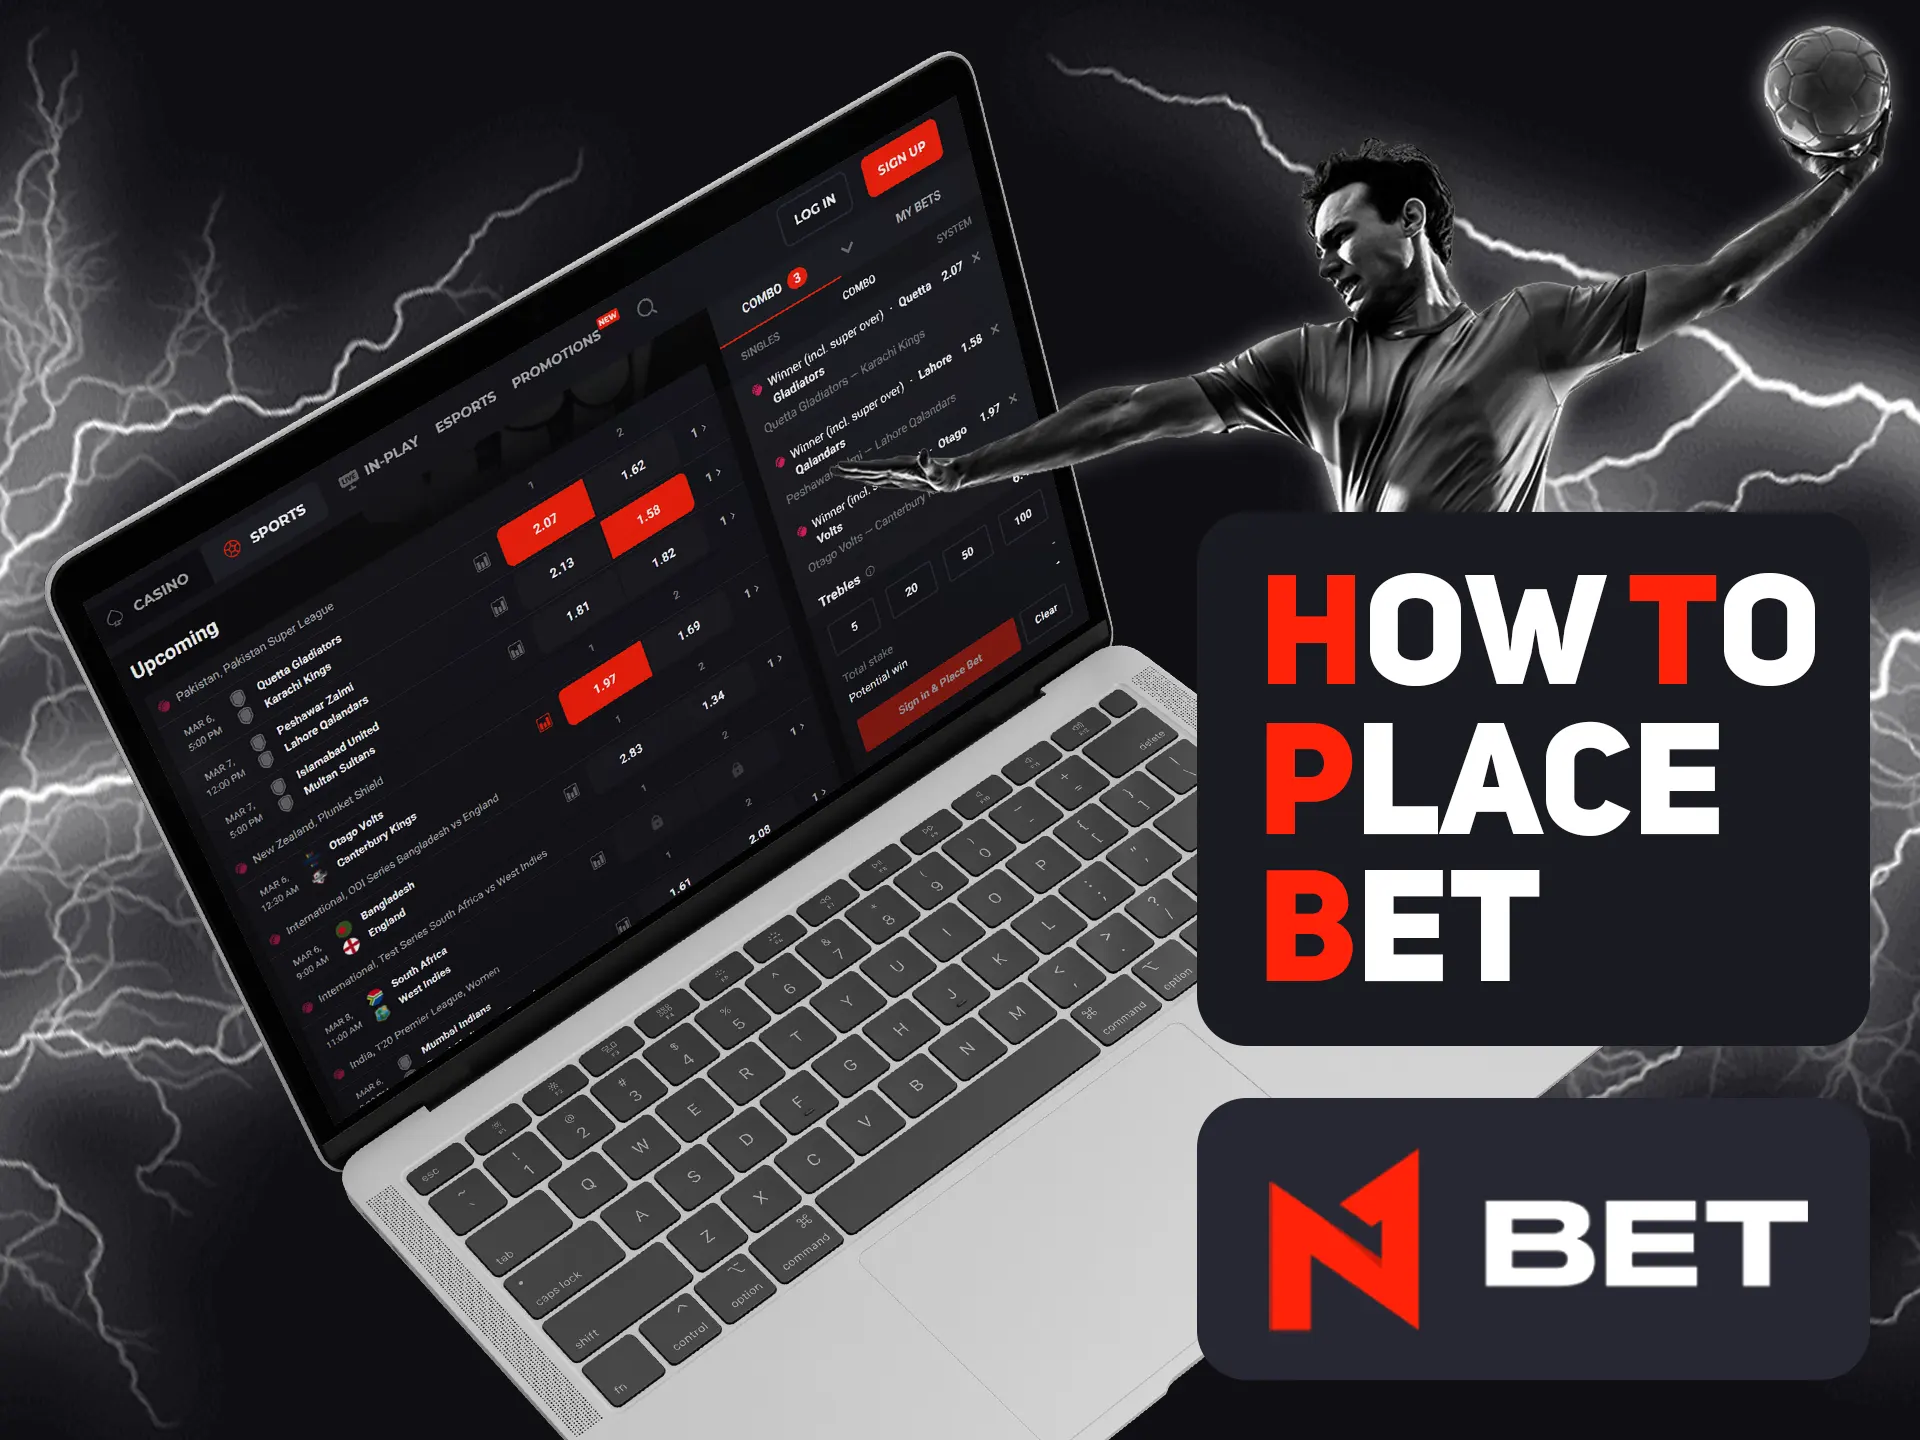 Placing bet is simple at N1bet.